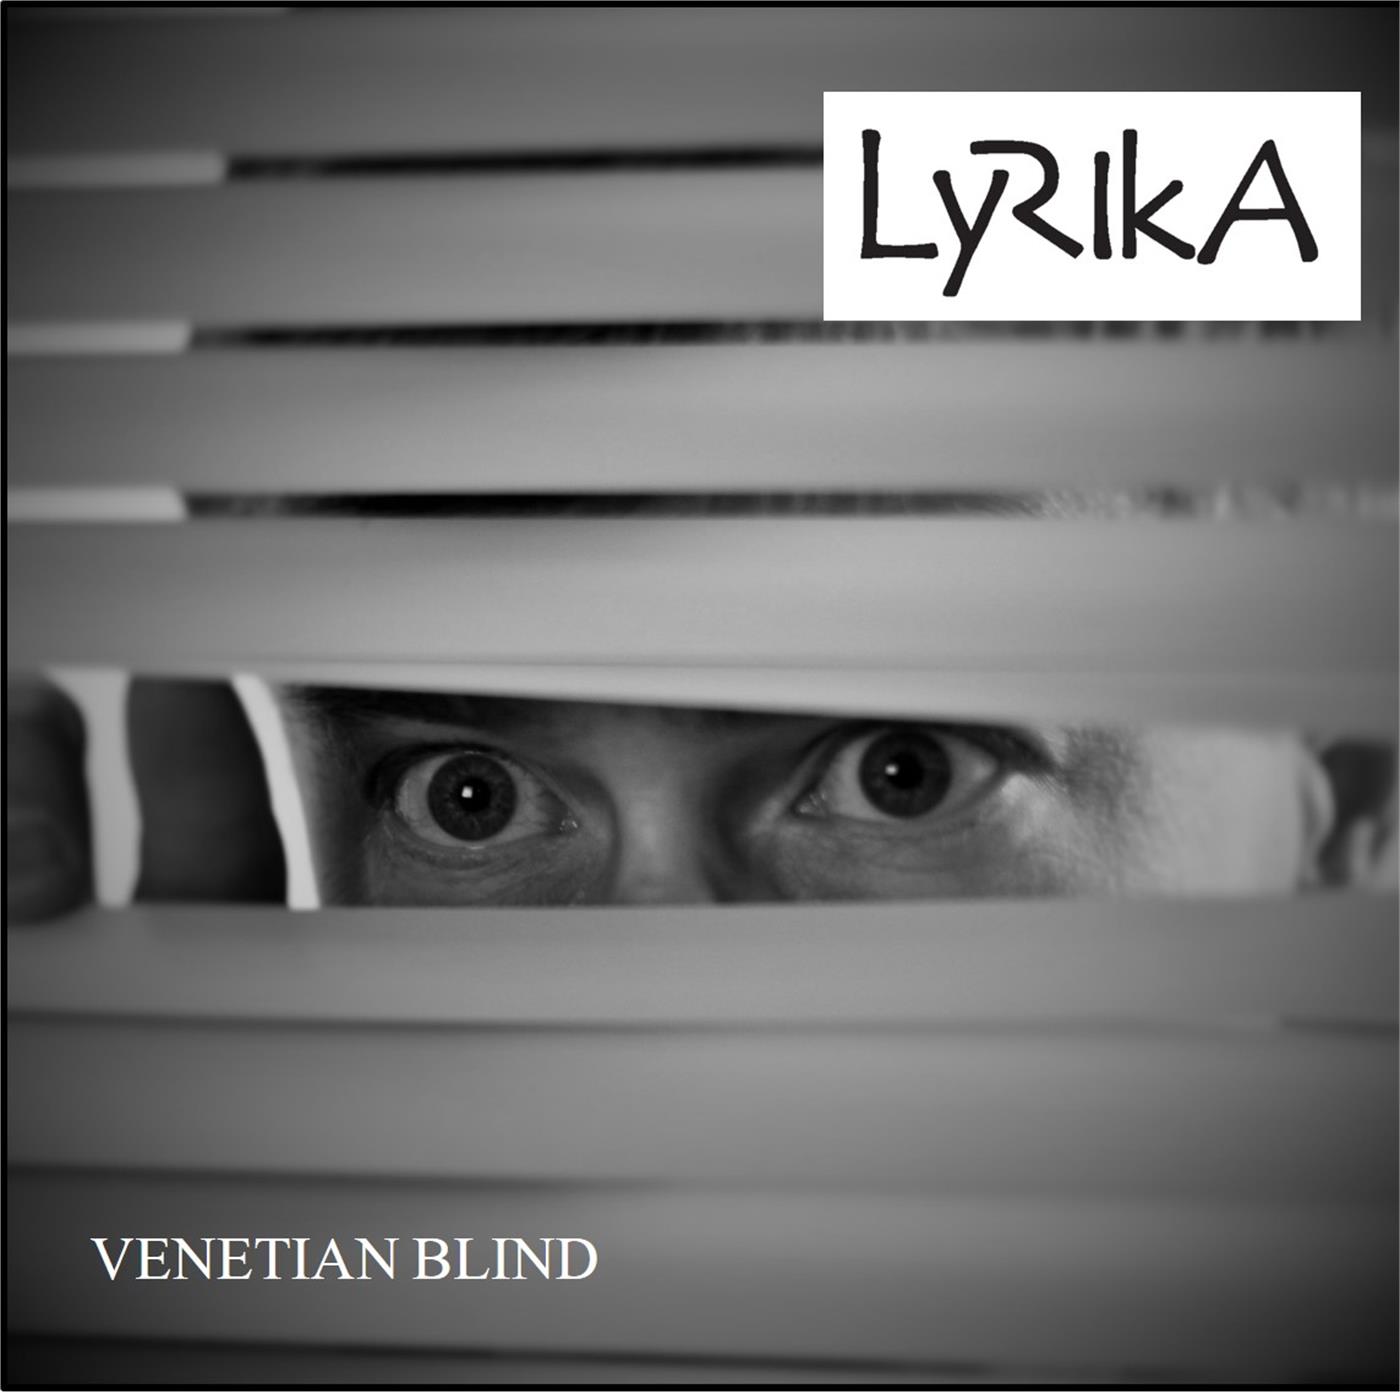 Venetian Blind